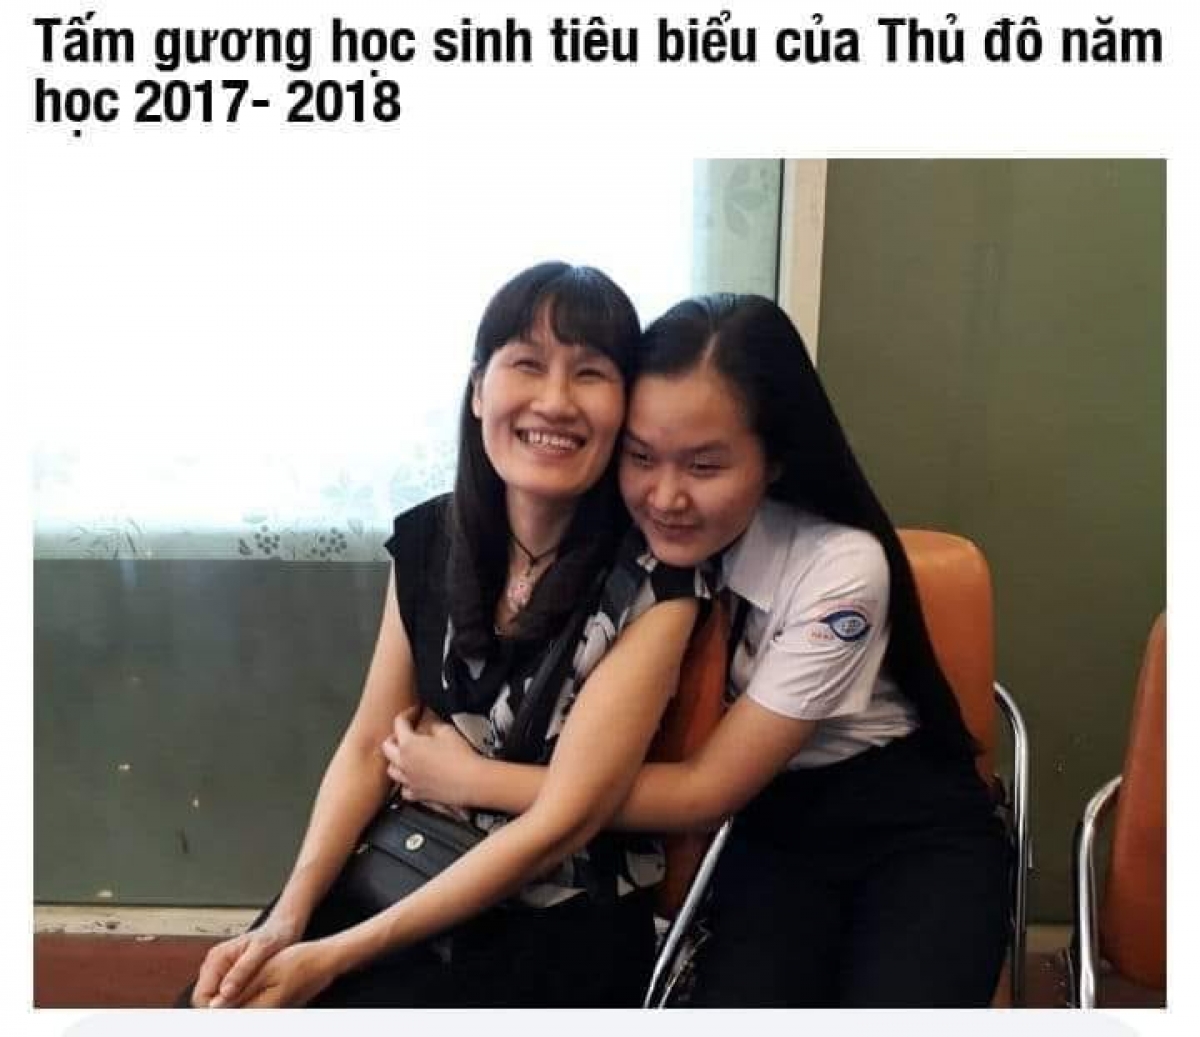 Mẹ và Linh trong ngày tuyên dương học sinh tiêu biểu Thủ đô 2017-2018